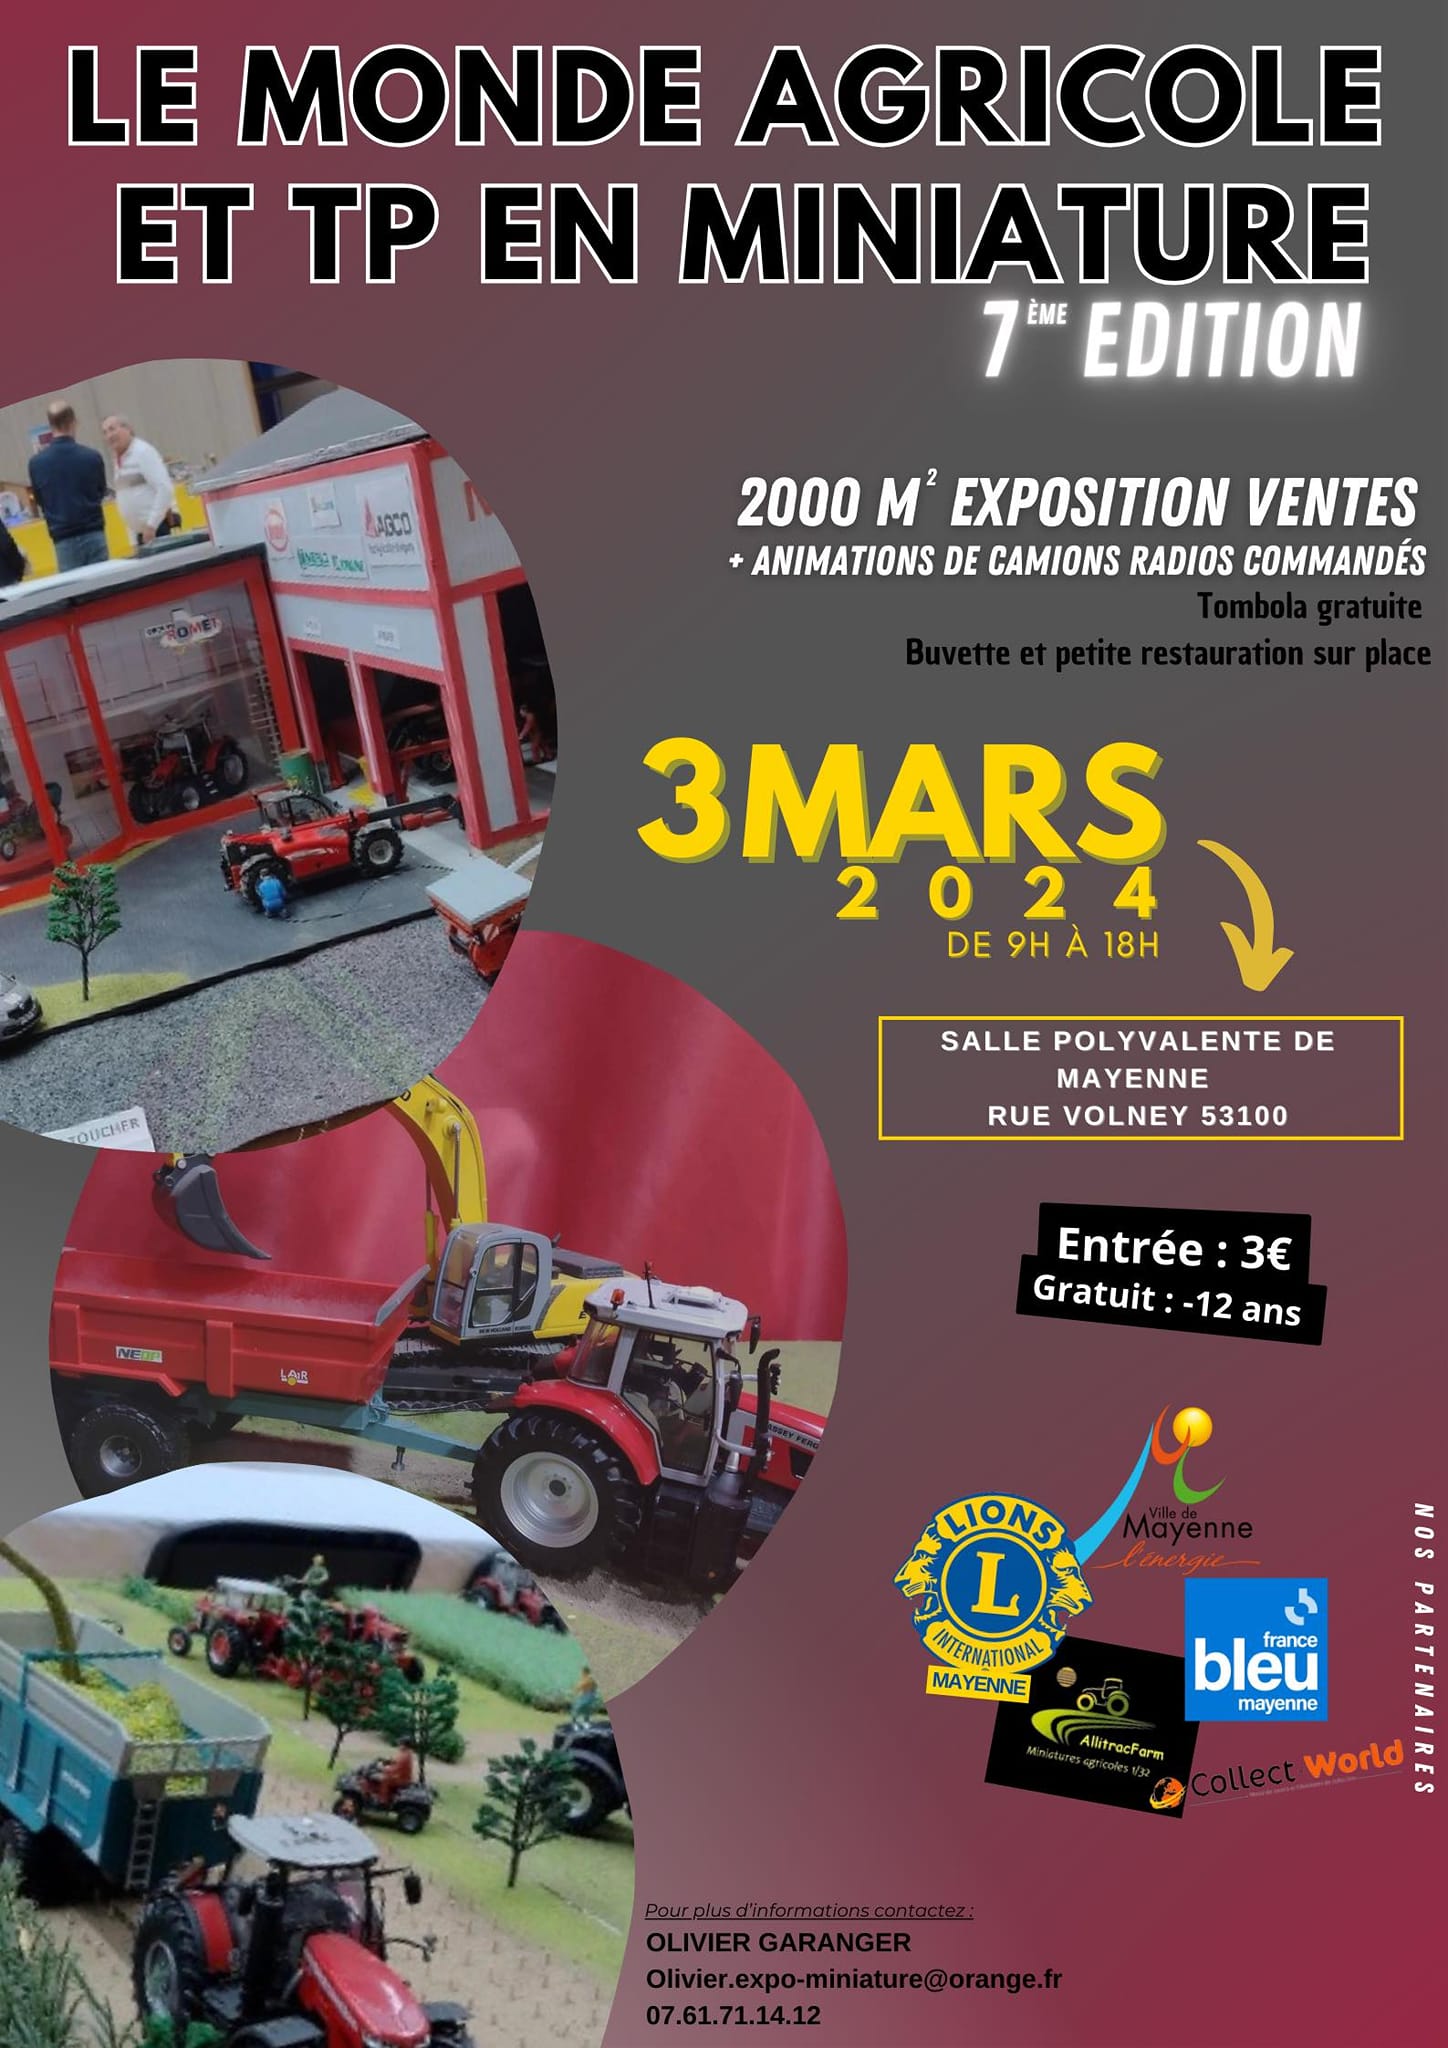 Exposition Ventes de miniatures Agricoles à MAYENNE (53) le 3 Mars